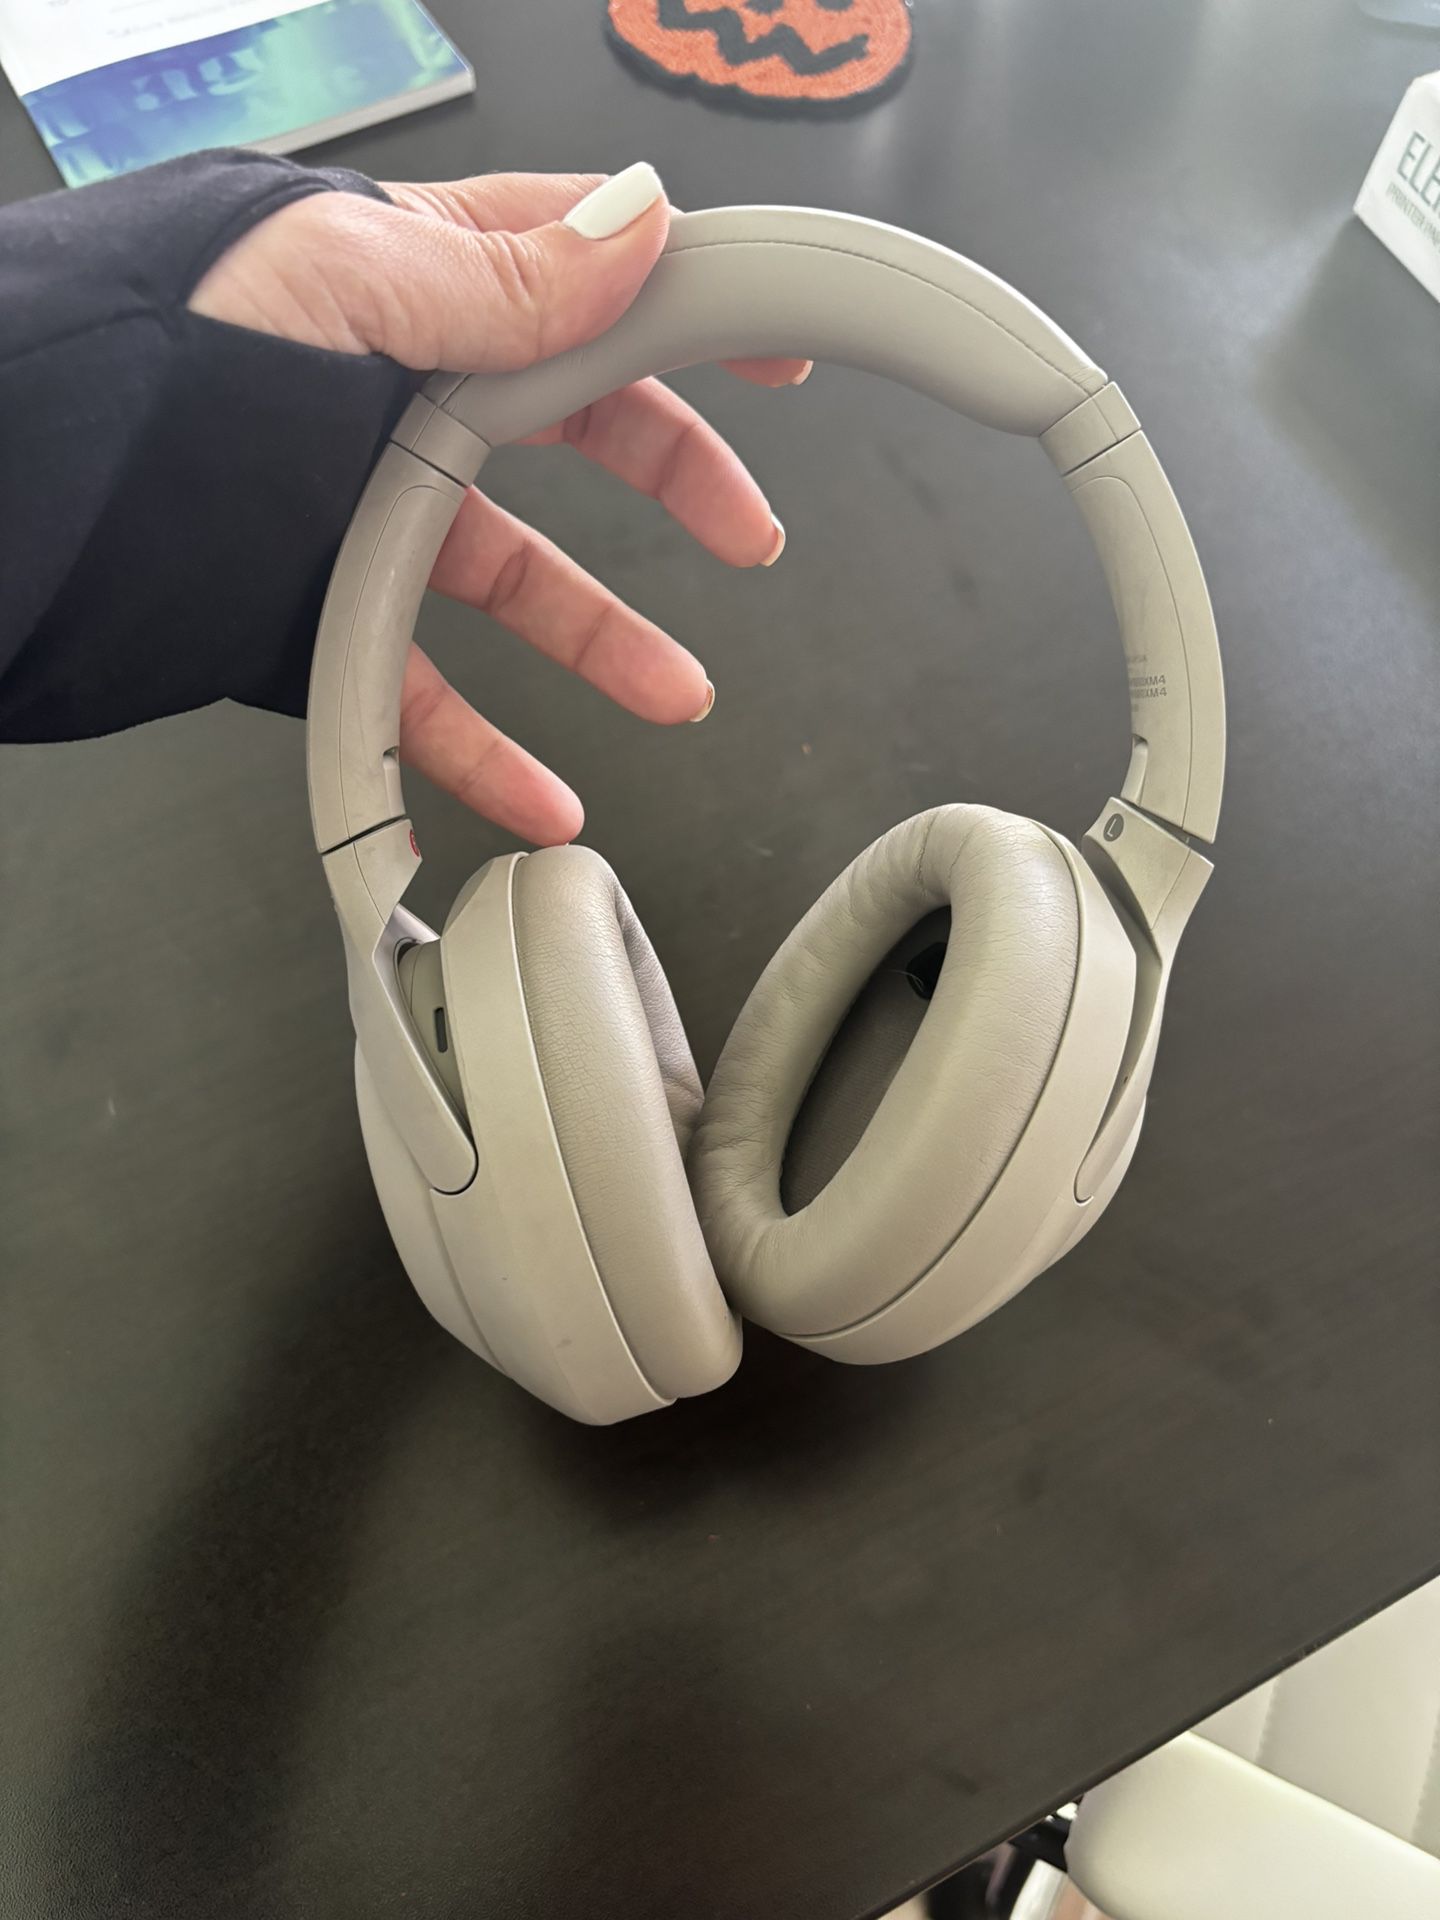 sony headphones wh-1000xm4